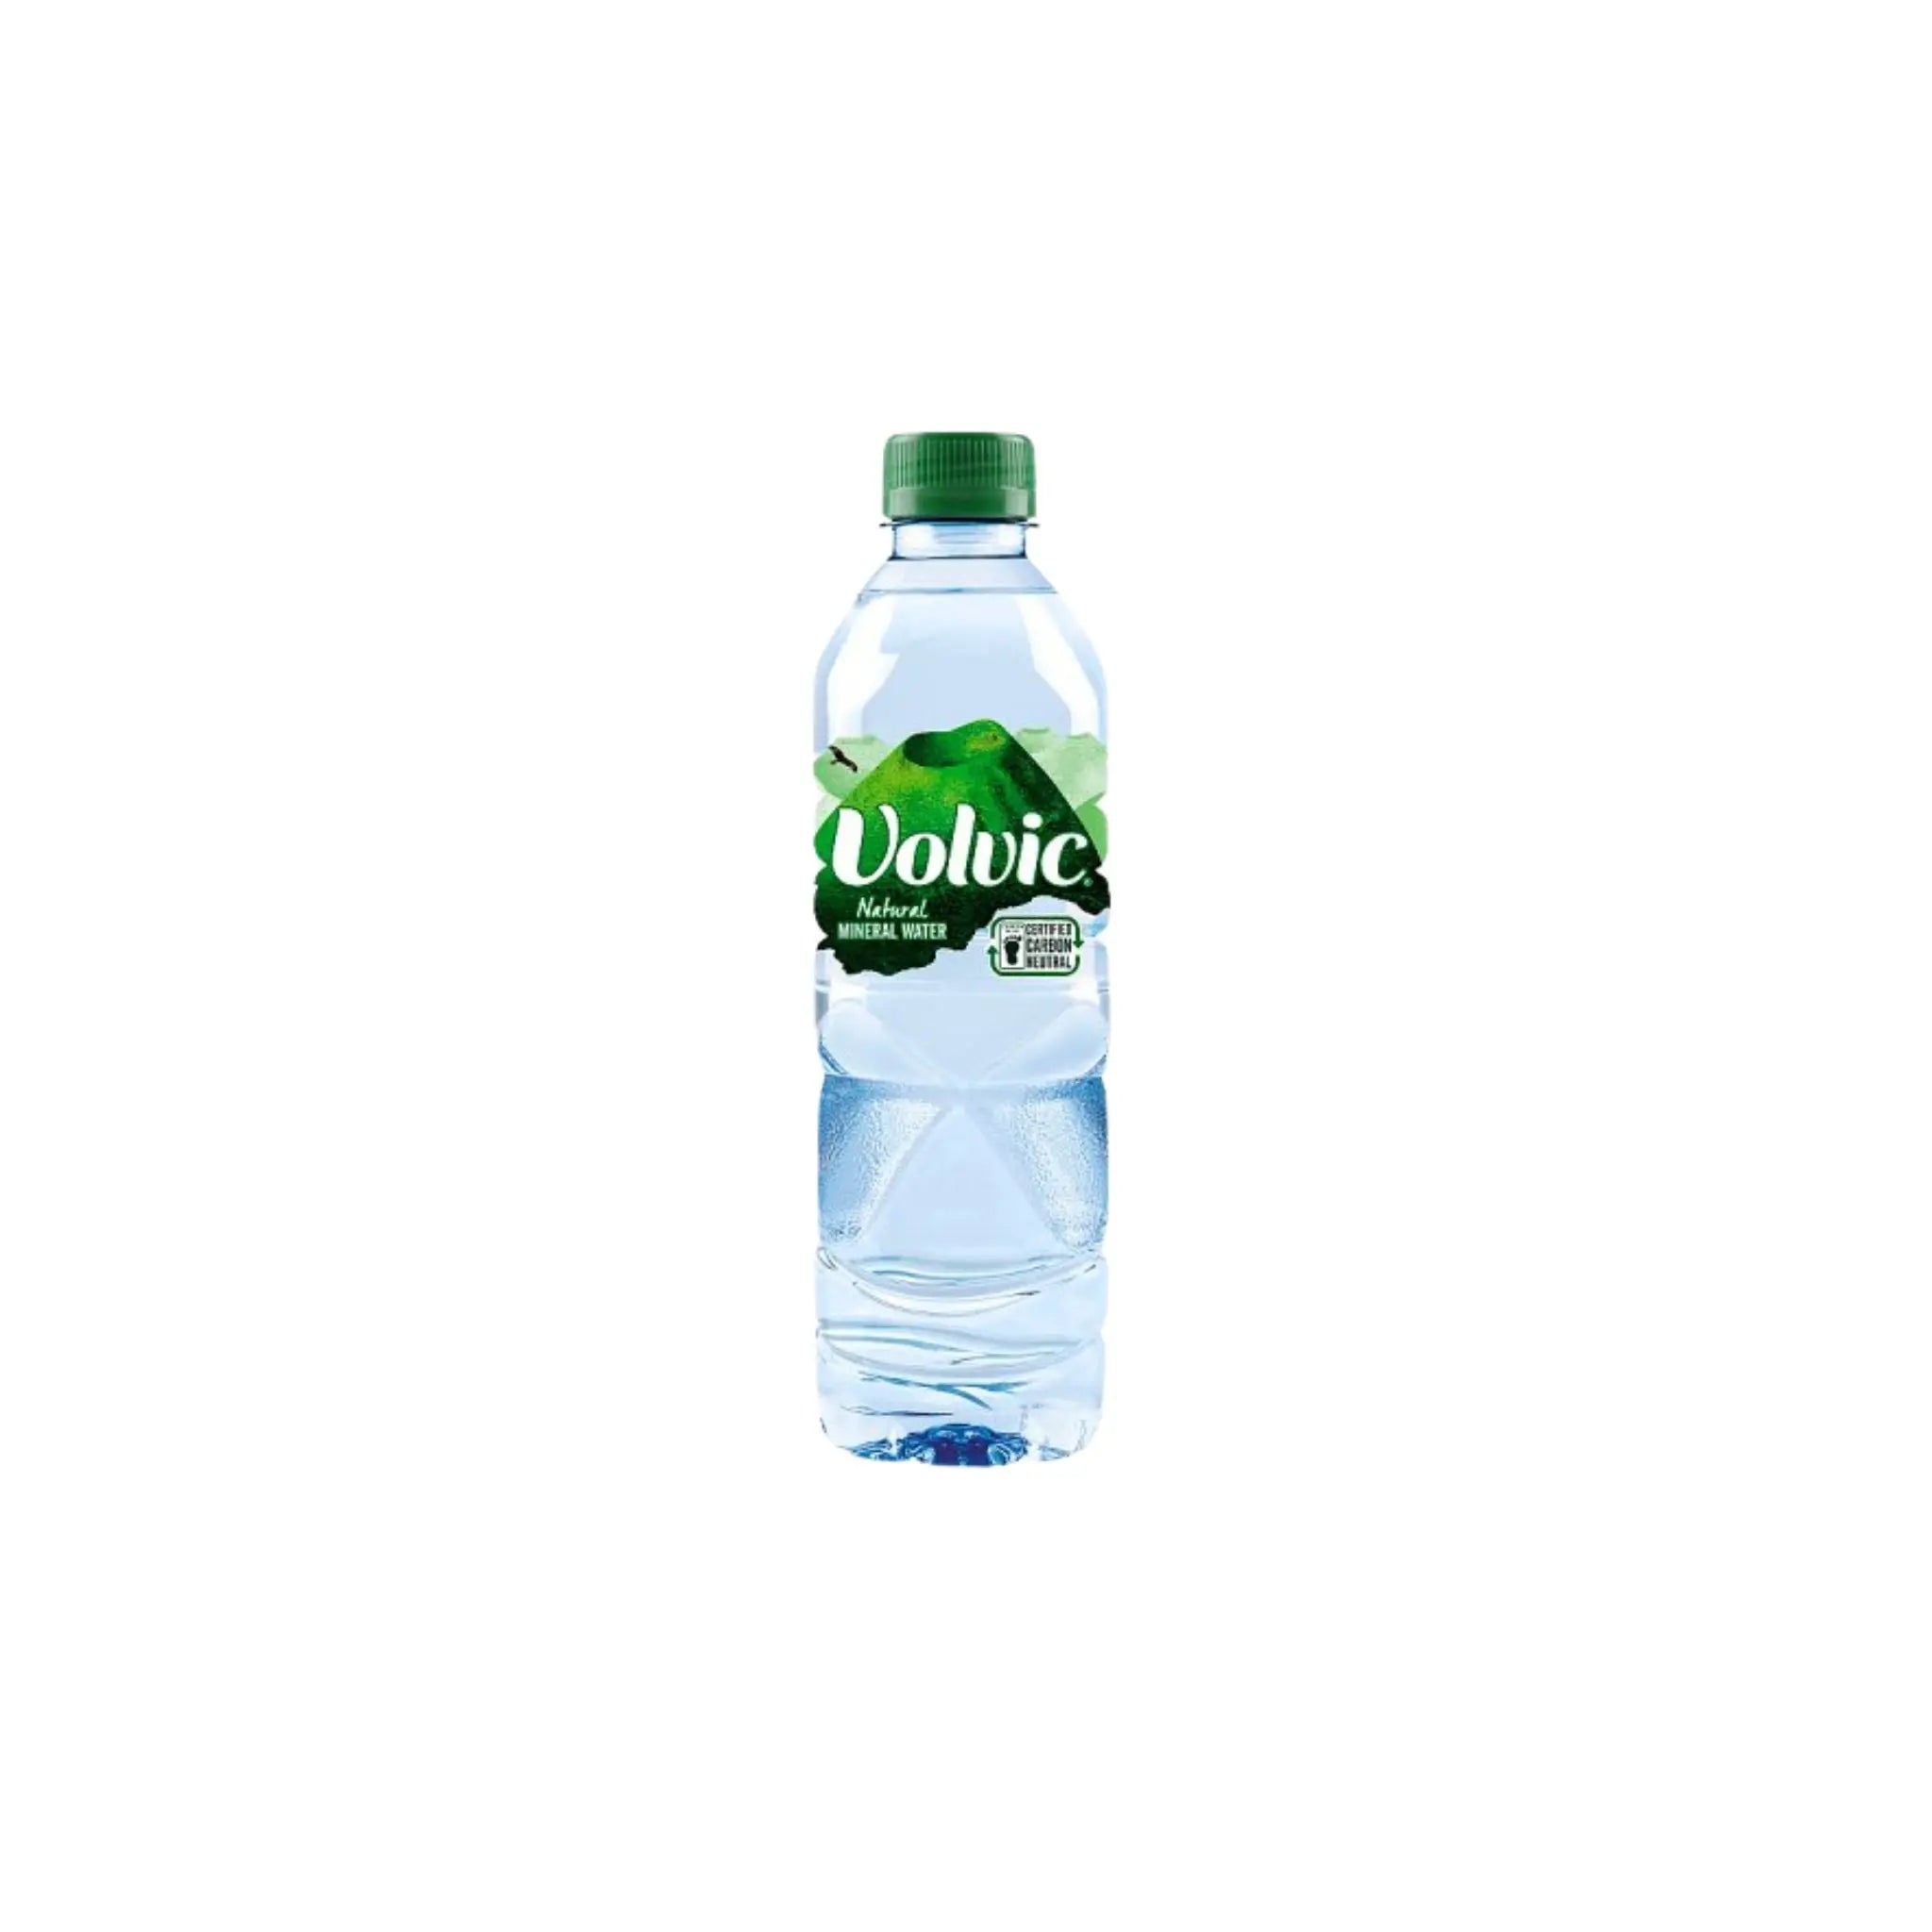 Volvic Natural Mineral Water PET - 24x500ml (1 carton) - Marino.AE